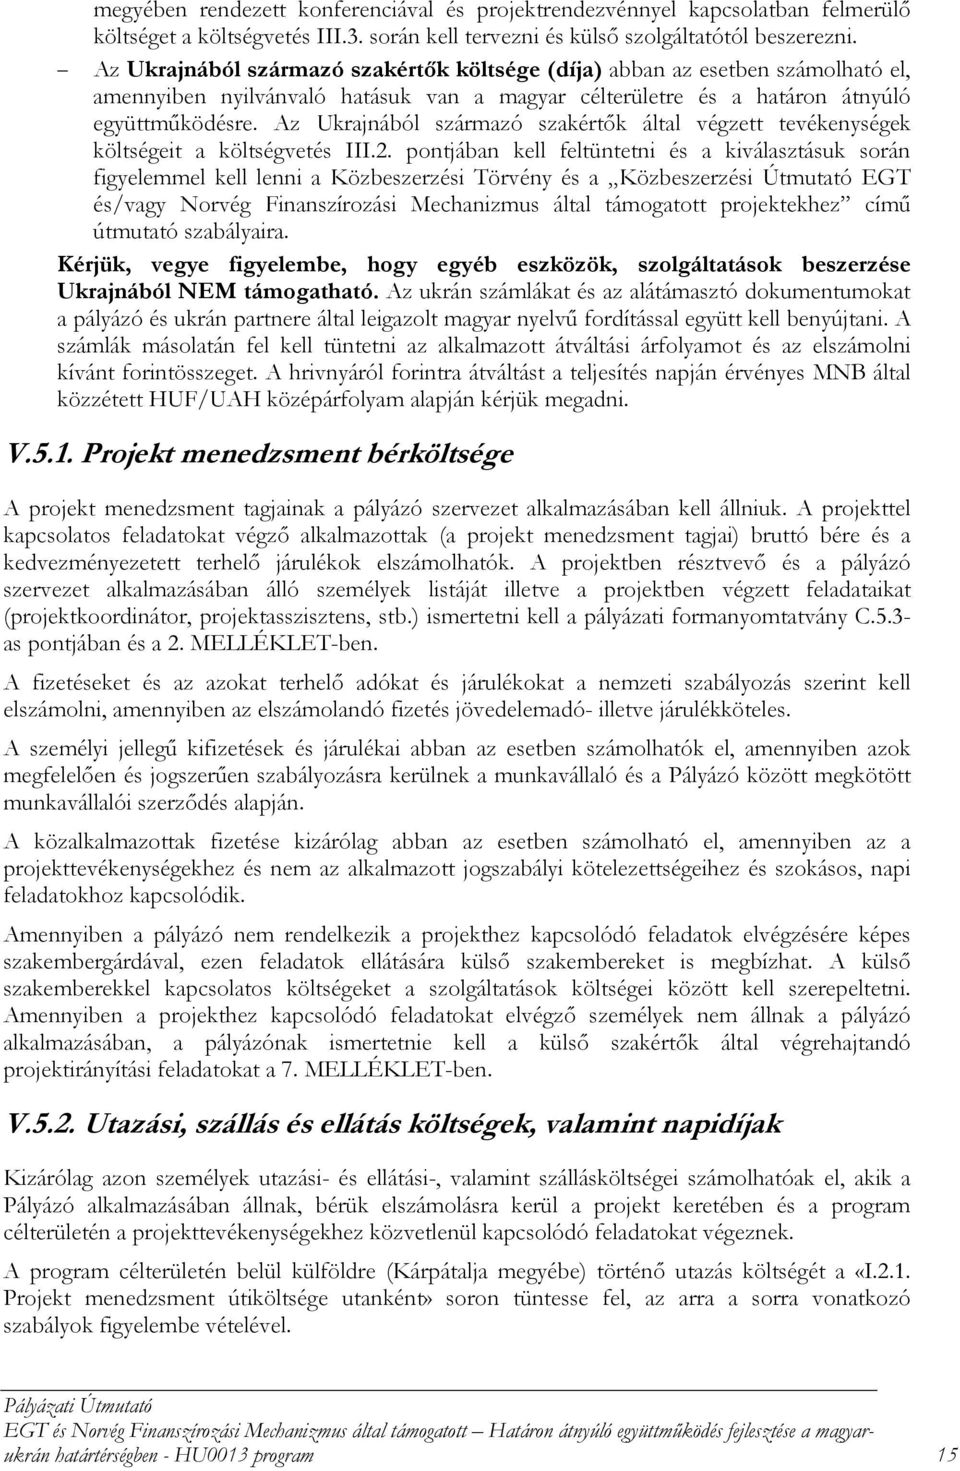 Az Ukrajnából származó szakértők által végzett tevékenységek költségeit a költségvetés III.2.